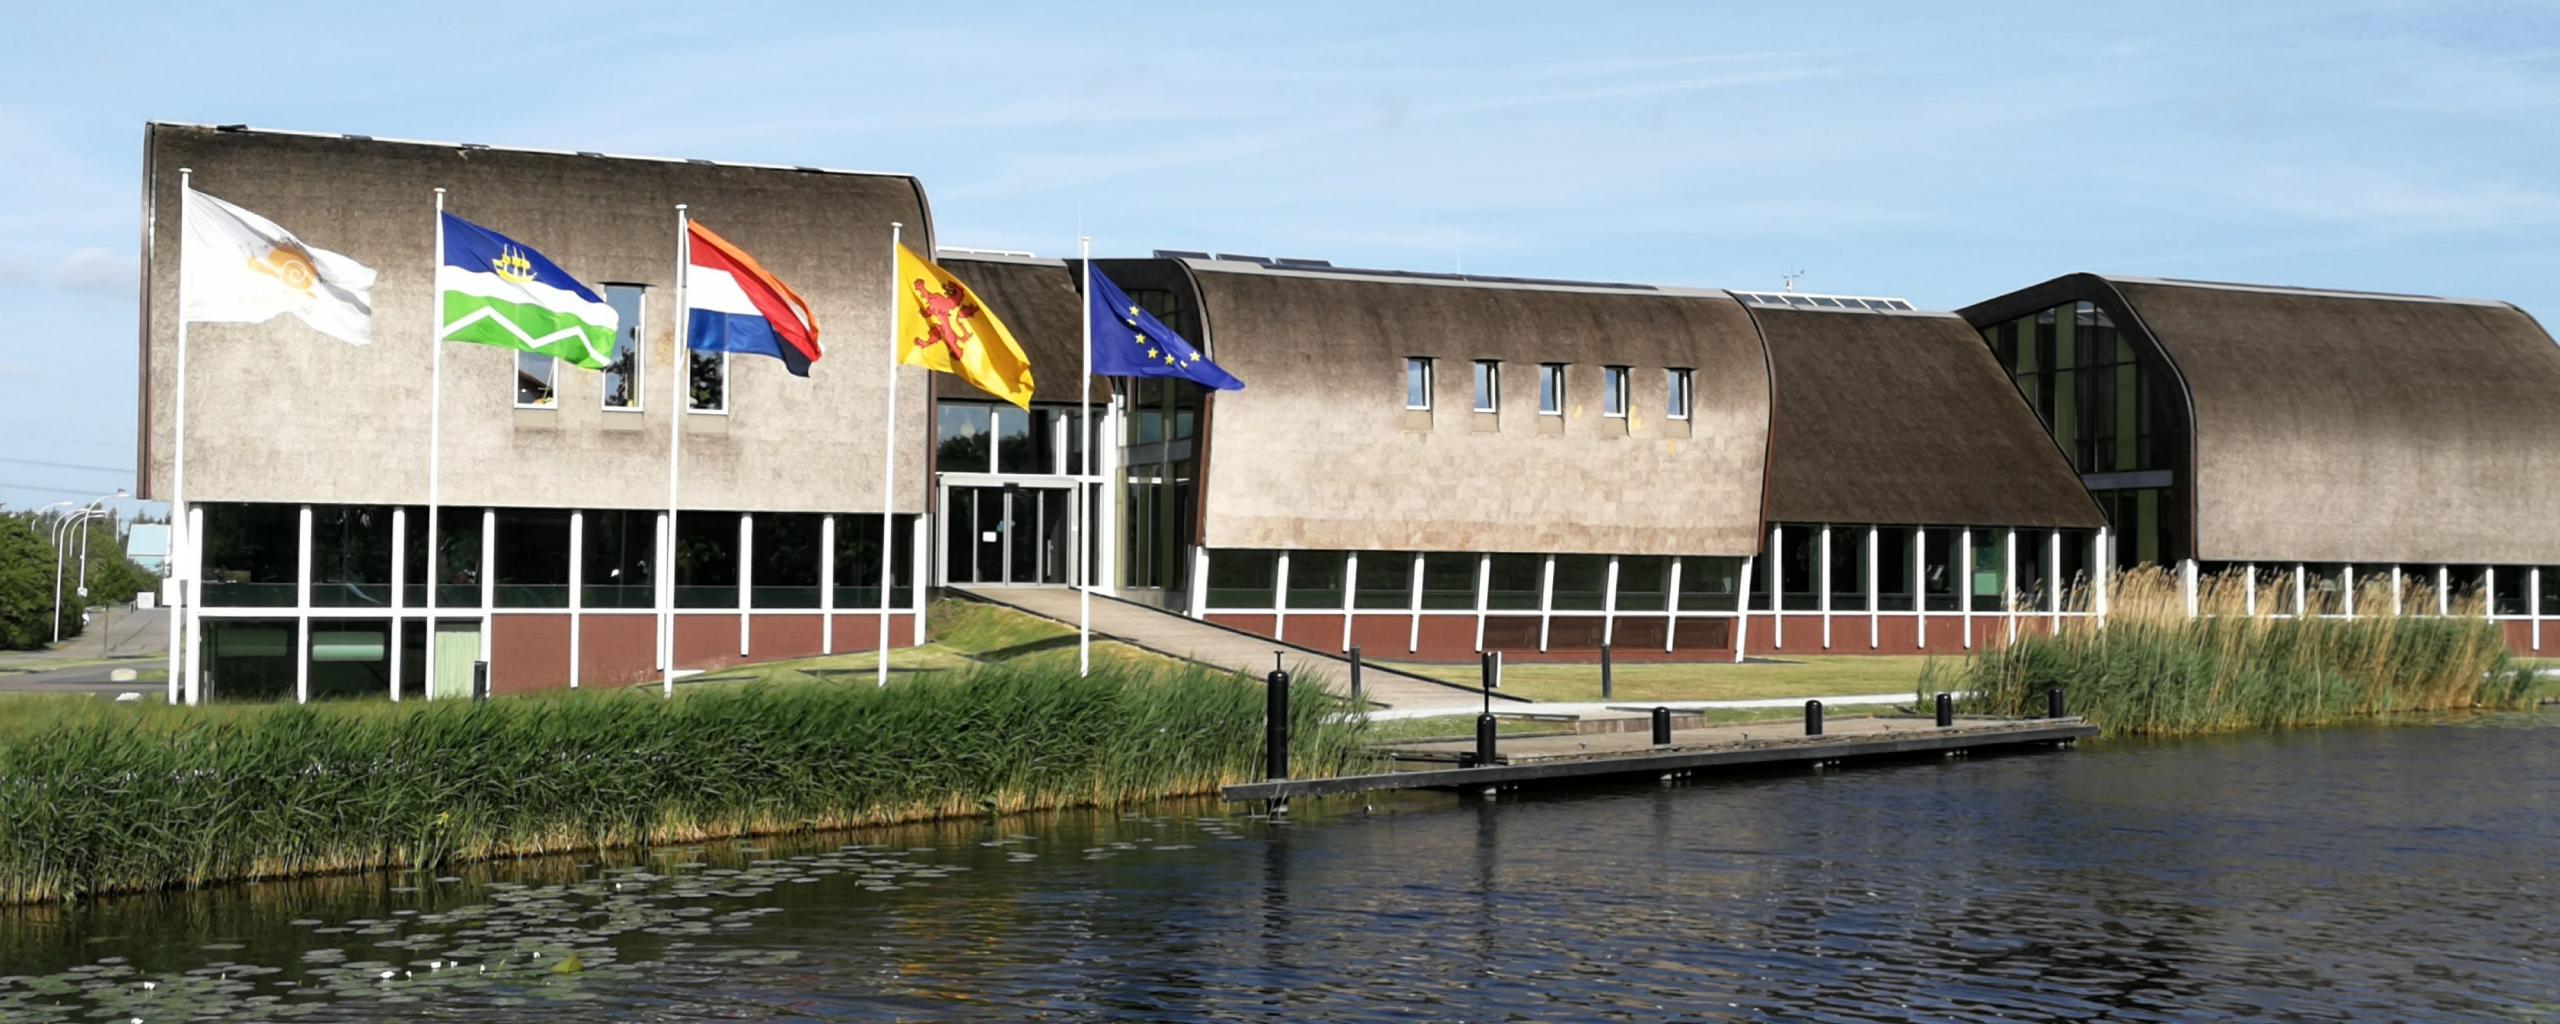 Gemeente Midden-Delfland hecht waarde aan duurzaamheid. Dit wordt getoond in het nieuwe gemeentehuis. (foto: middendelfland.nl)